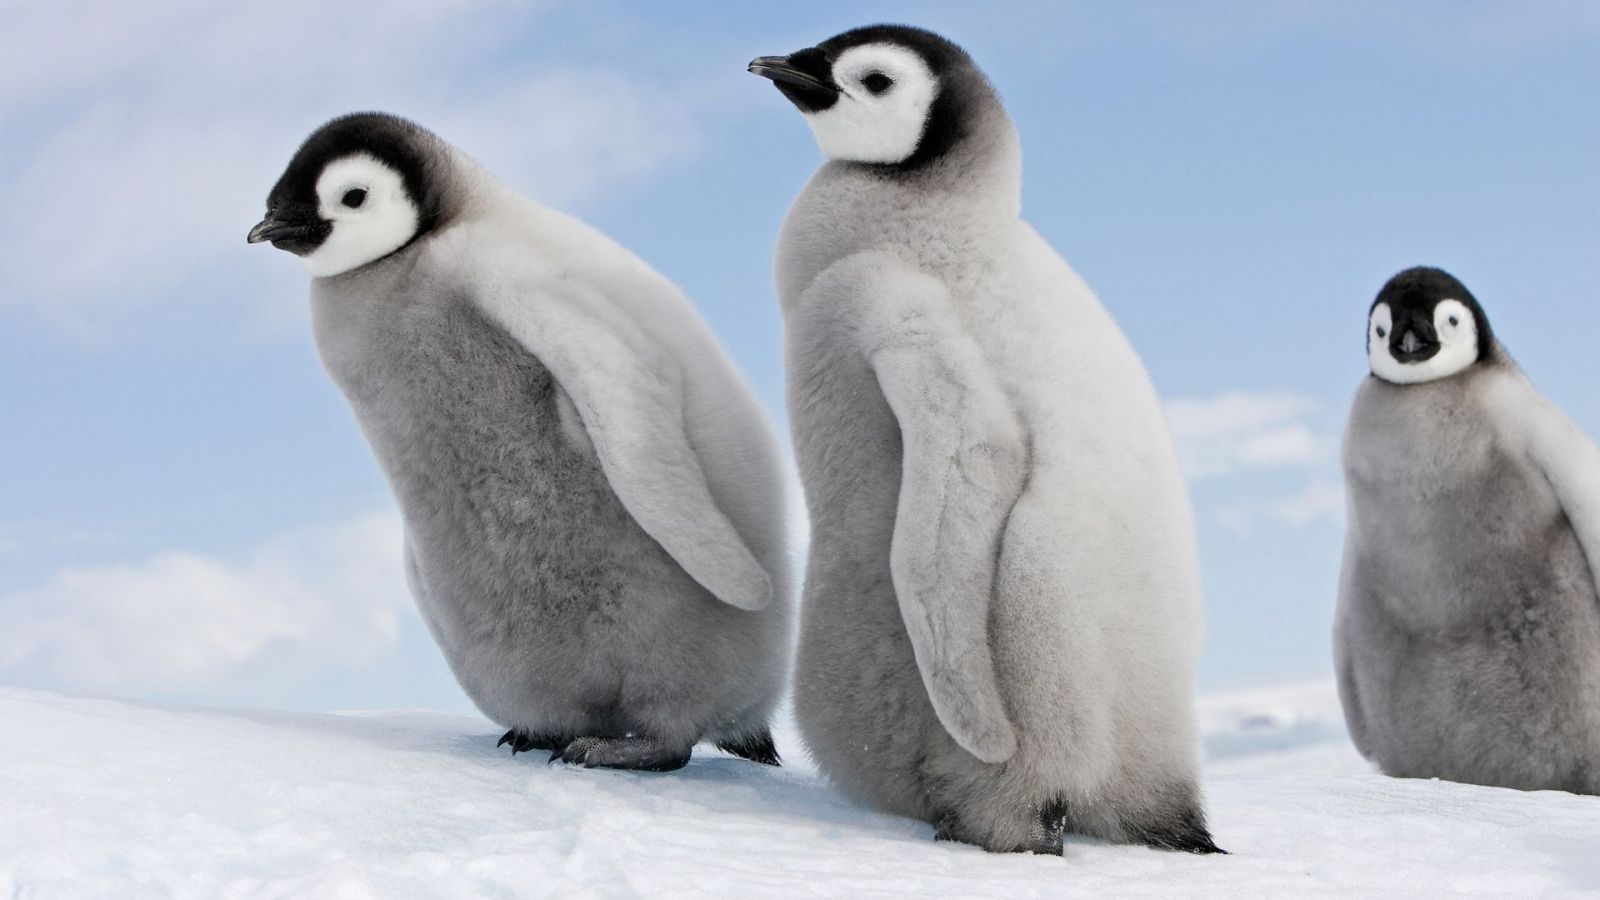 Gente despierta - Ecología evolutiva: pingüinos - Belliure - "Clase magistral" - Escuchar ahora